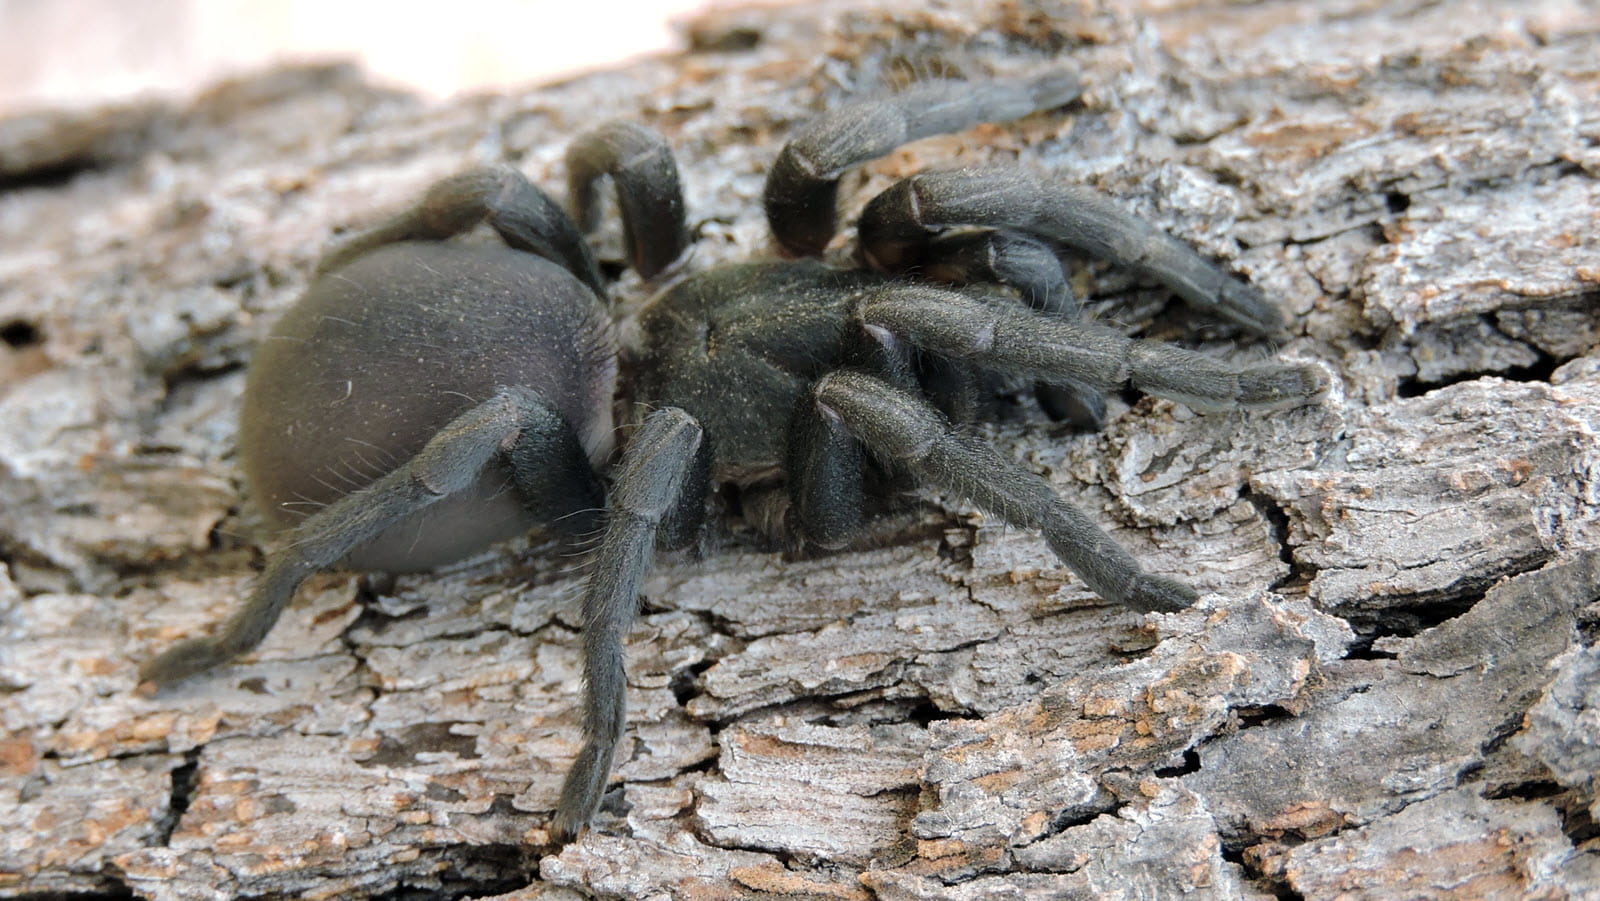 A large black Funnel Web Spider